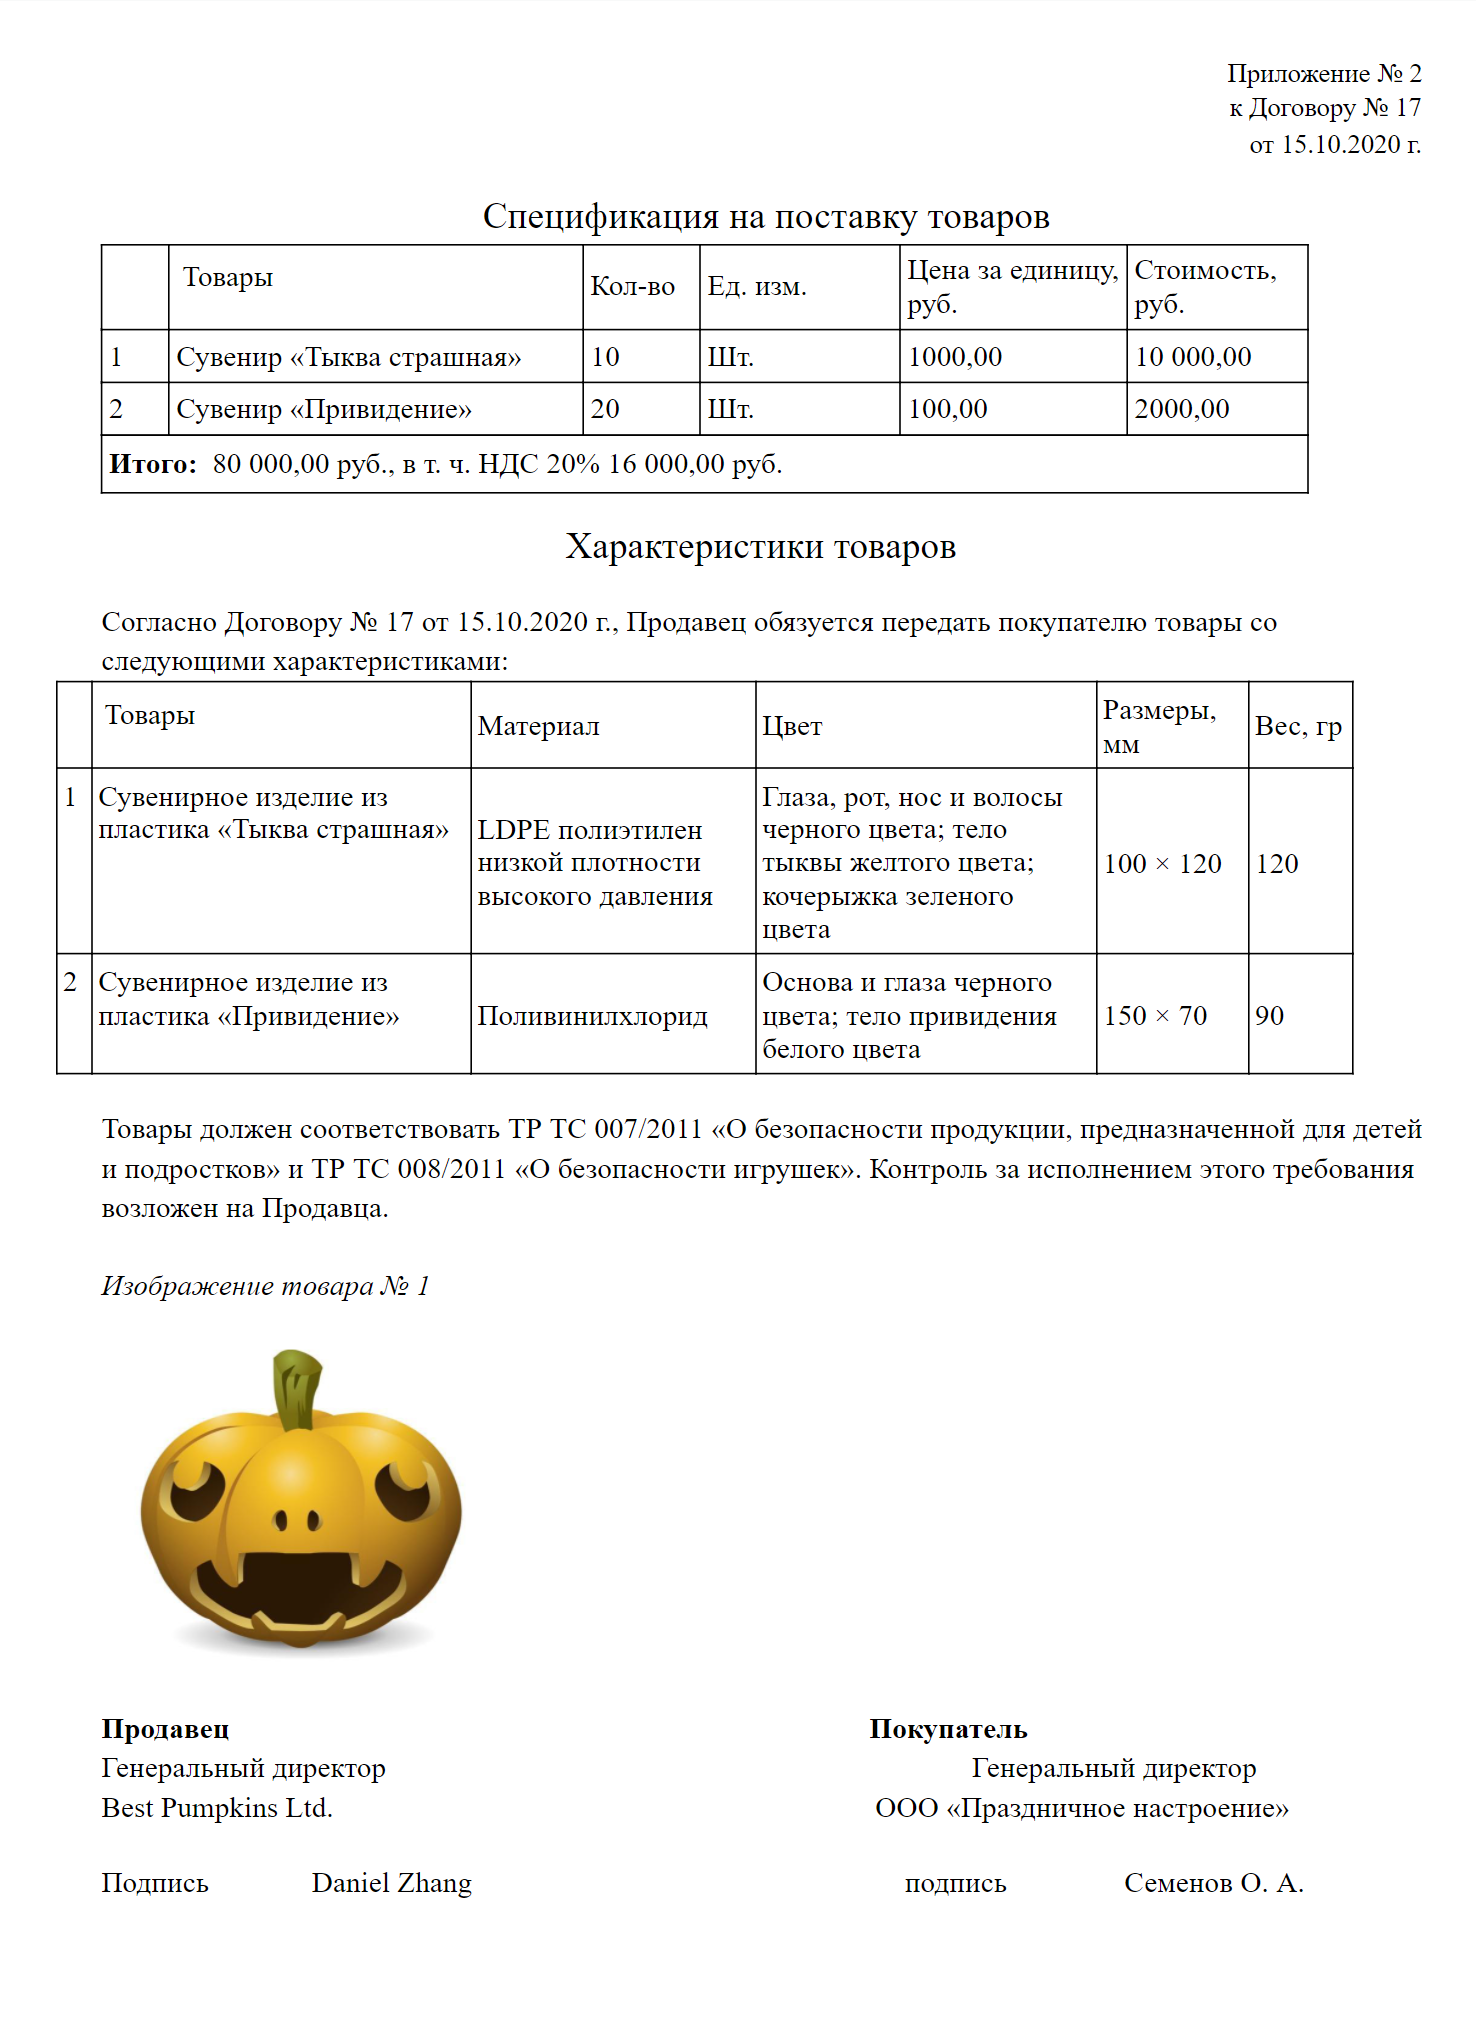 Пример спецификации на поставку, где указаны характеристики сувениров на Хеллоуин